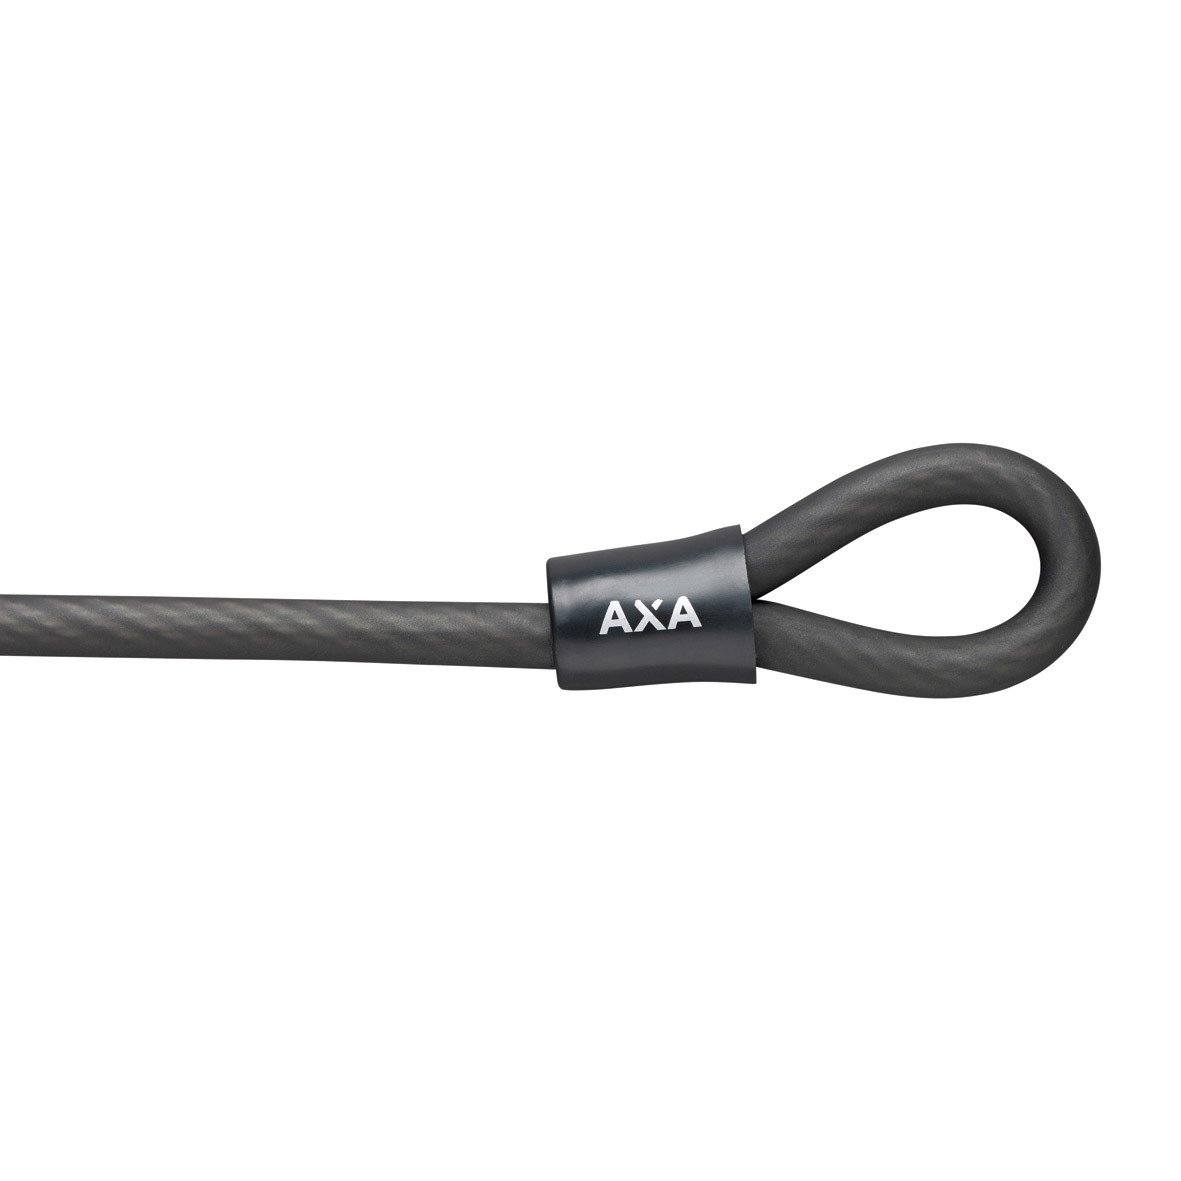 AXA Double Loop kabel met dubbele lus 10m op kaart